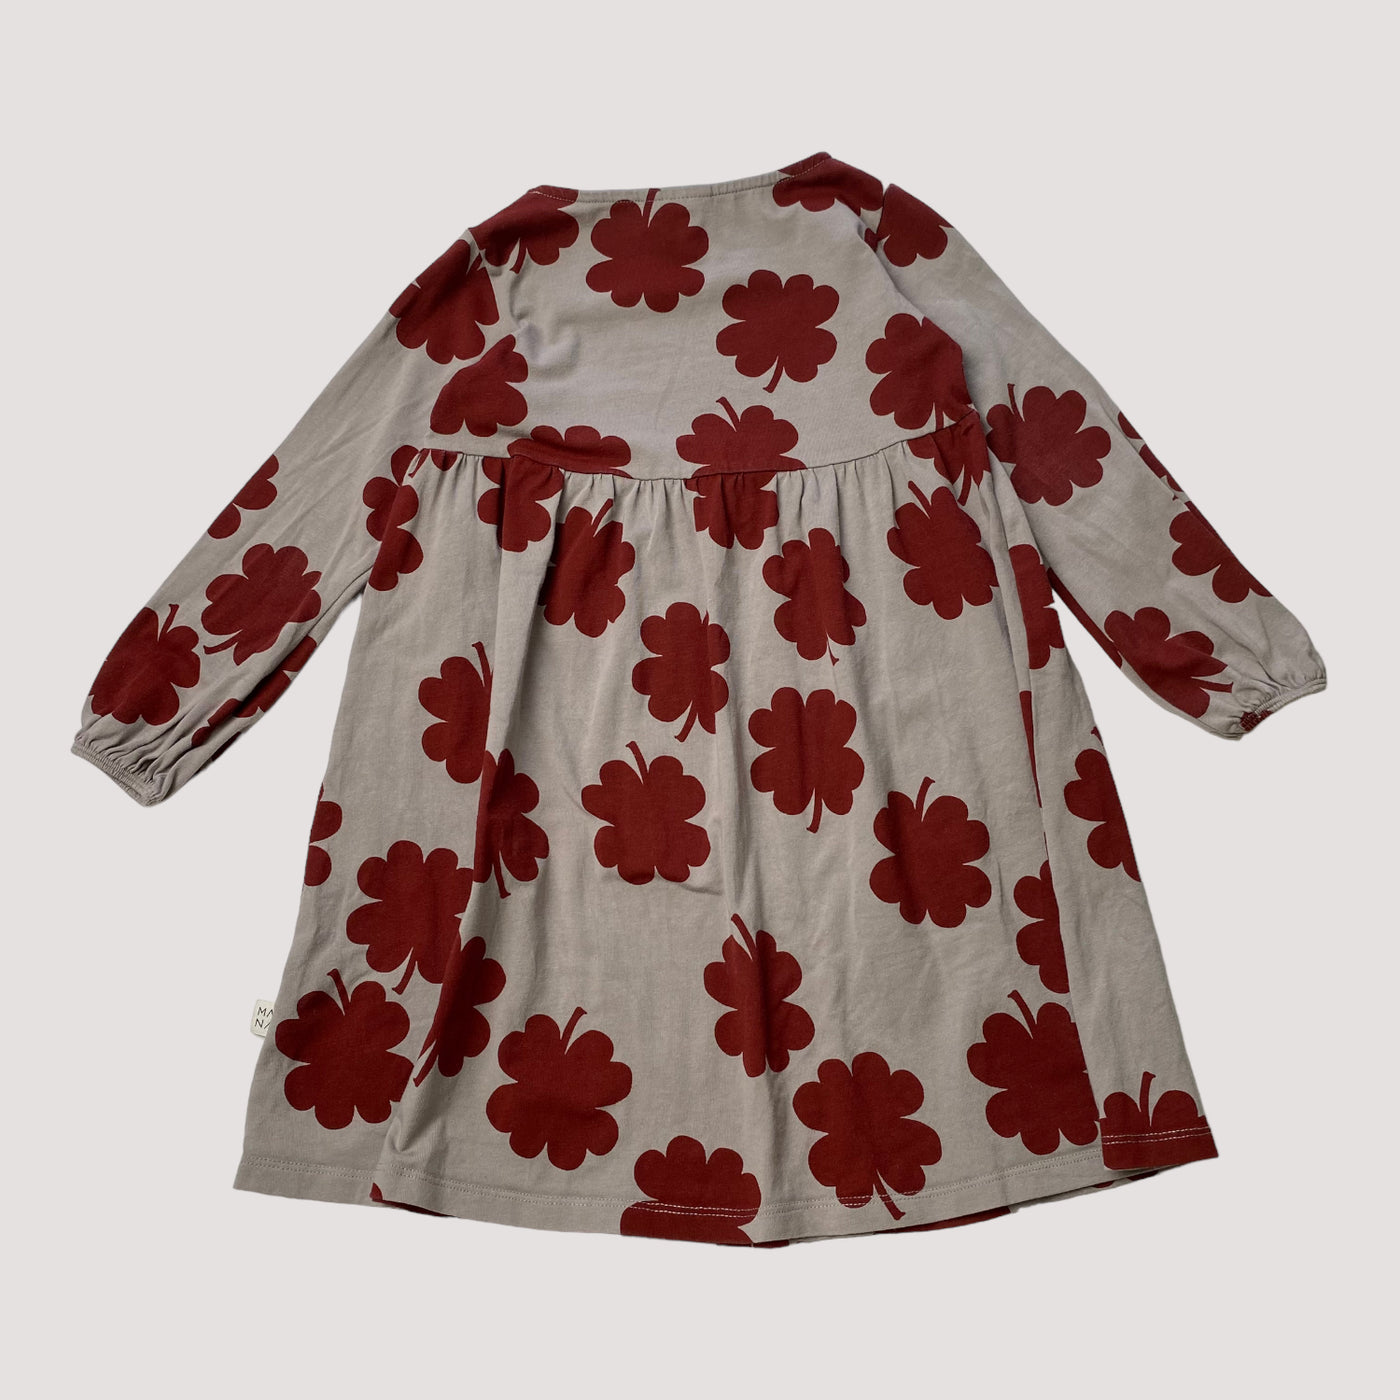 Mainio dress, flower| 98/104cm